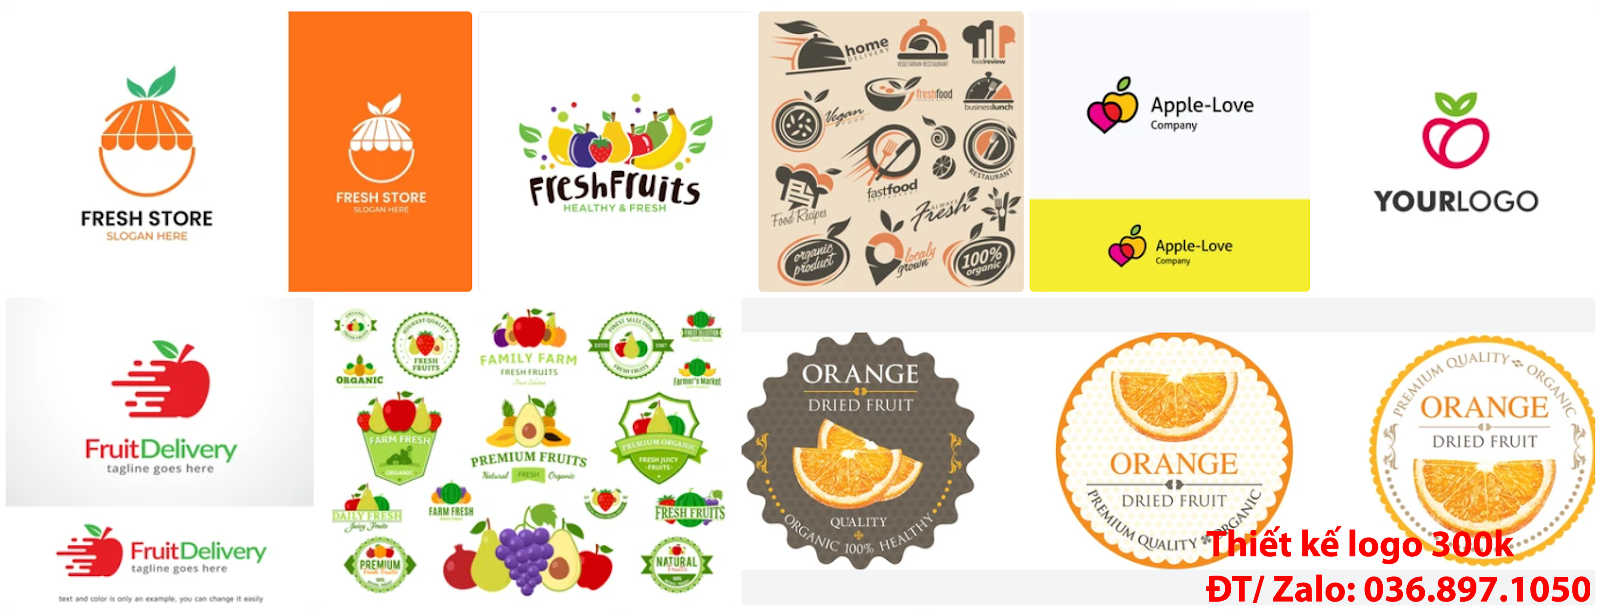 Mẫu Thiết Kế Logo trái cây đẹp giá rẻ ở Hà Nội từ 300k đến 500k uy tín chất lượng cao